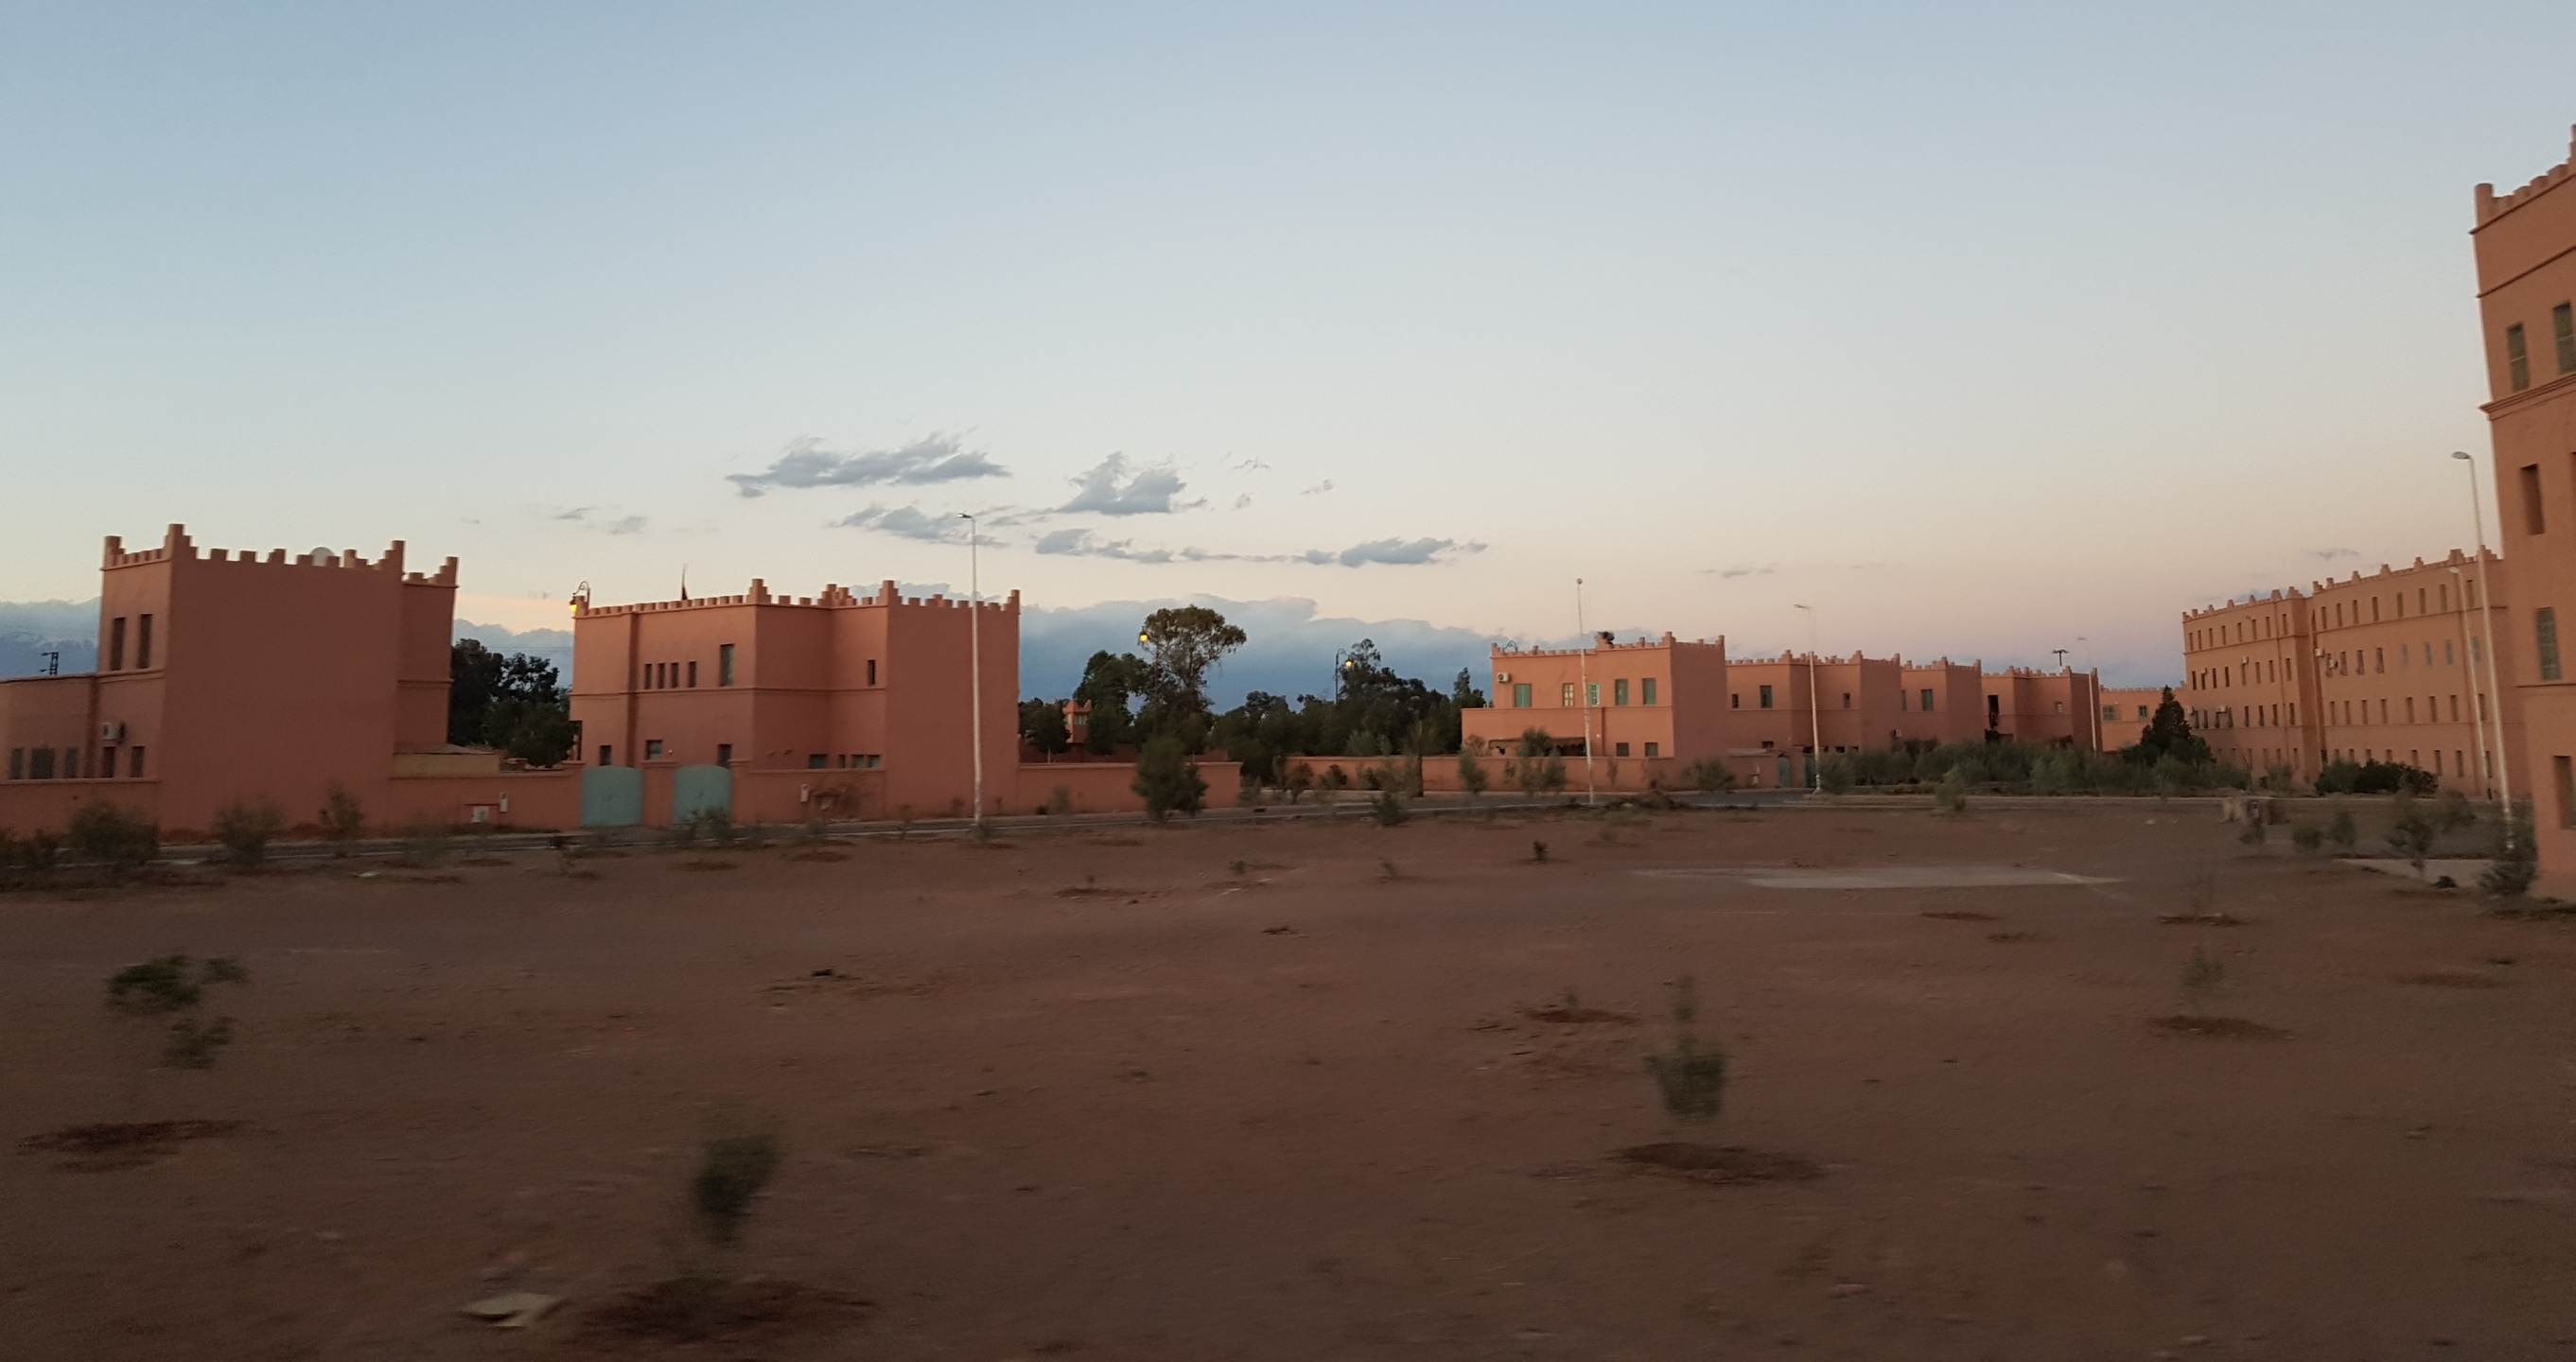 20180310-183339-Ouarzazate-SJ-2.jpg